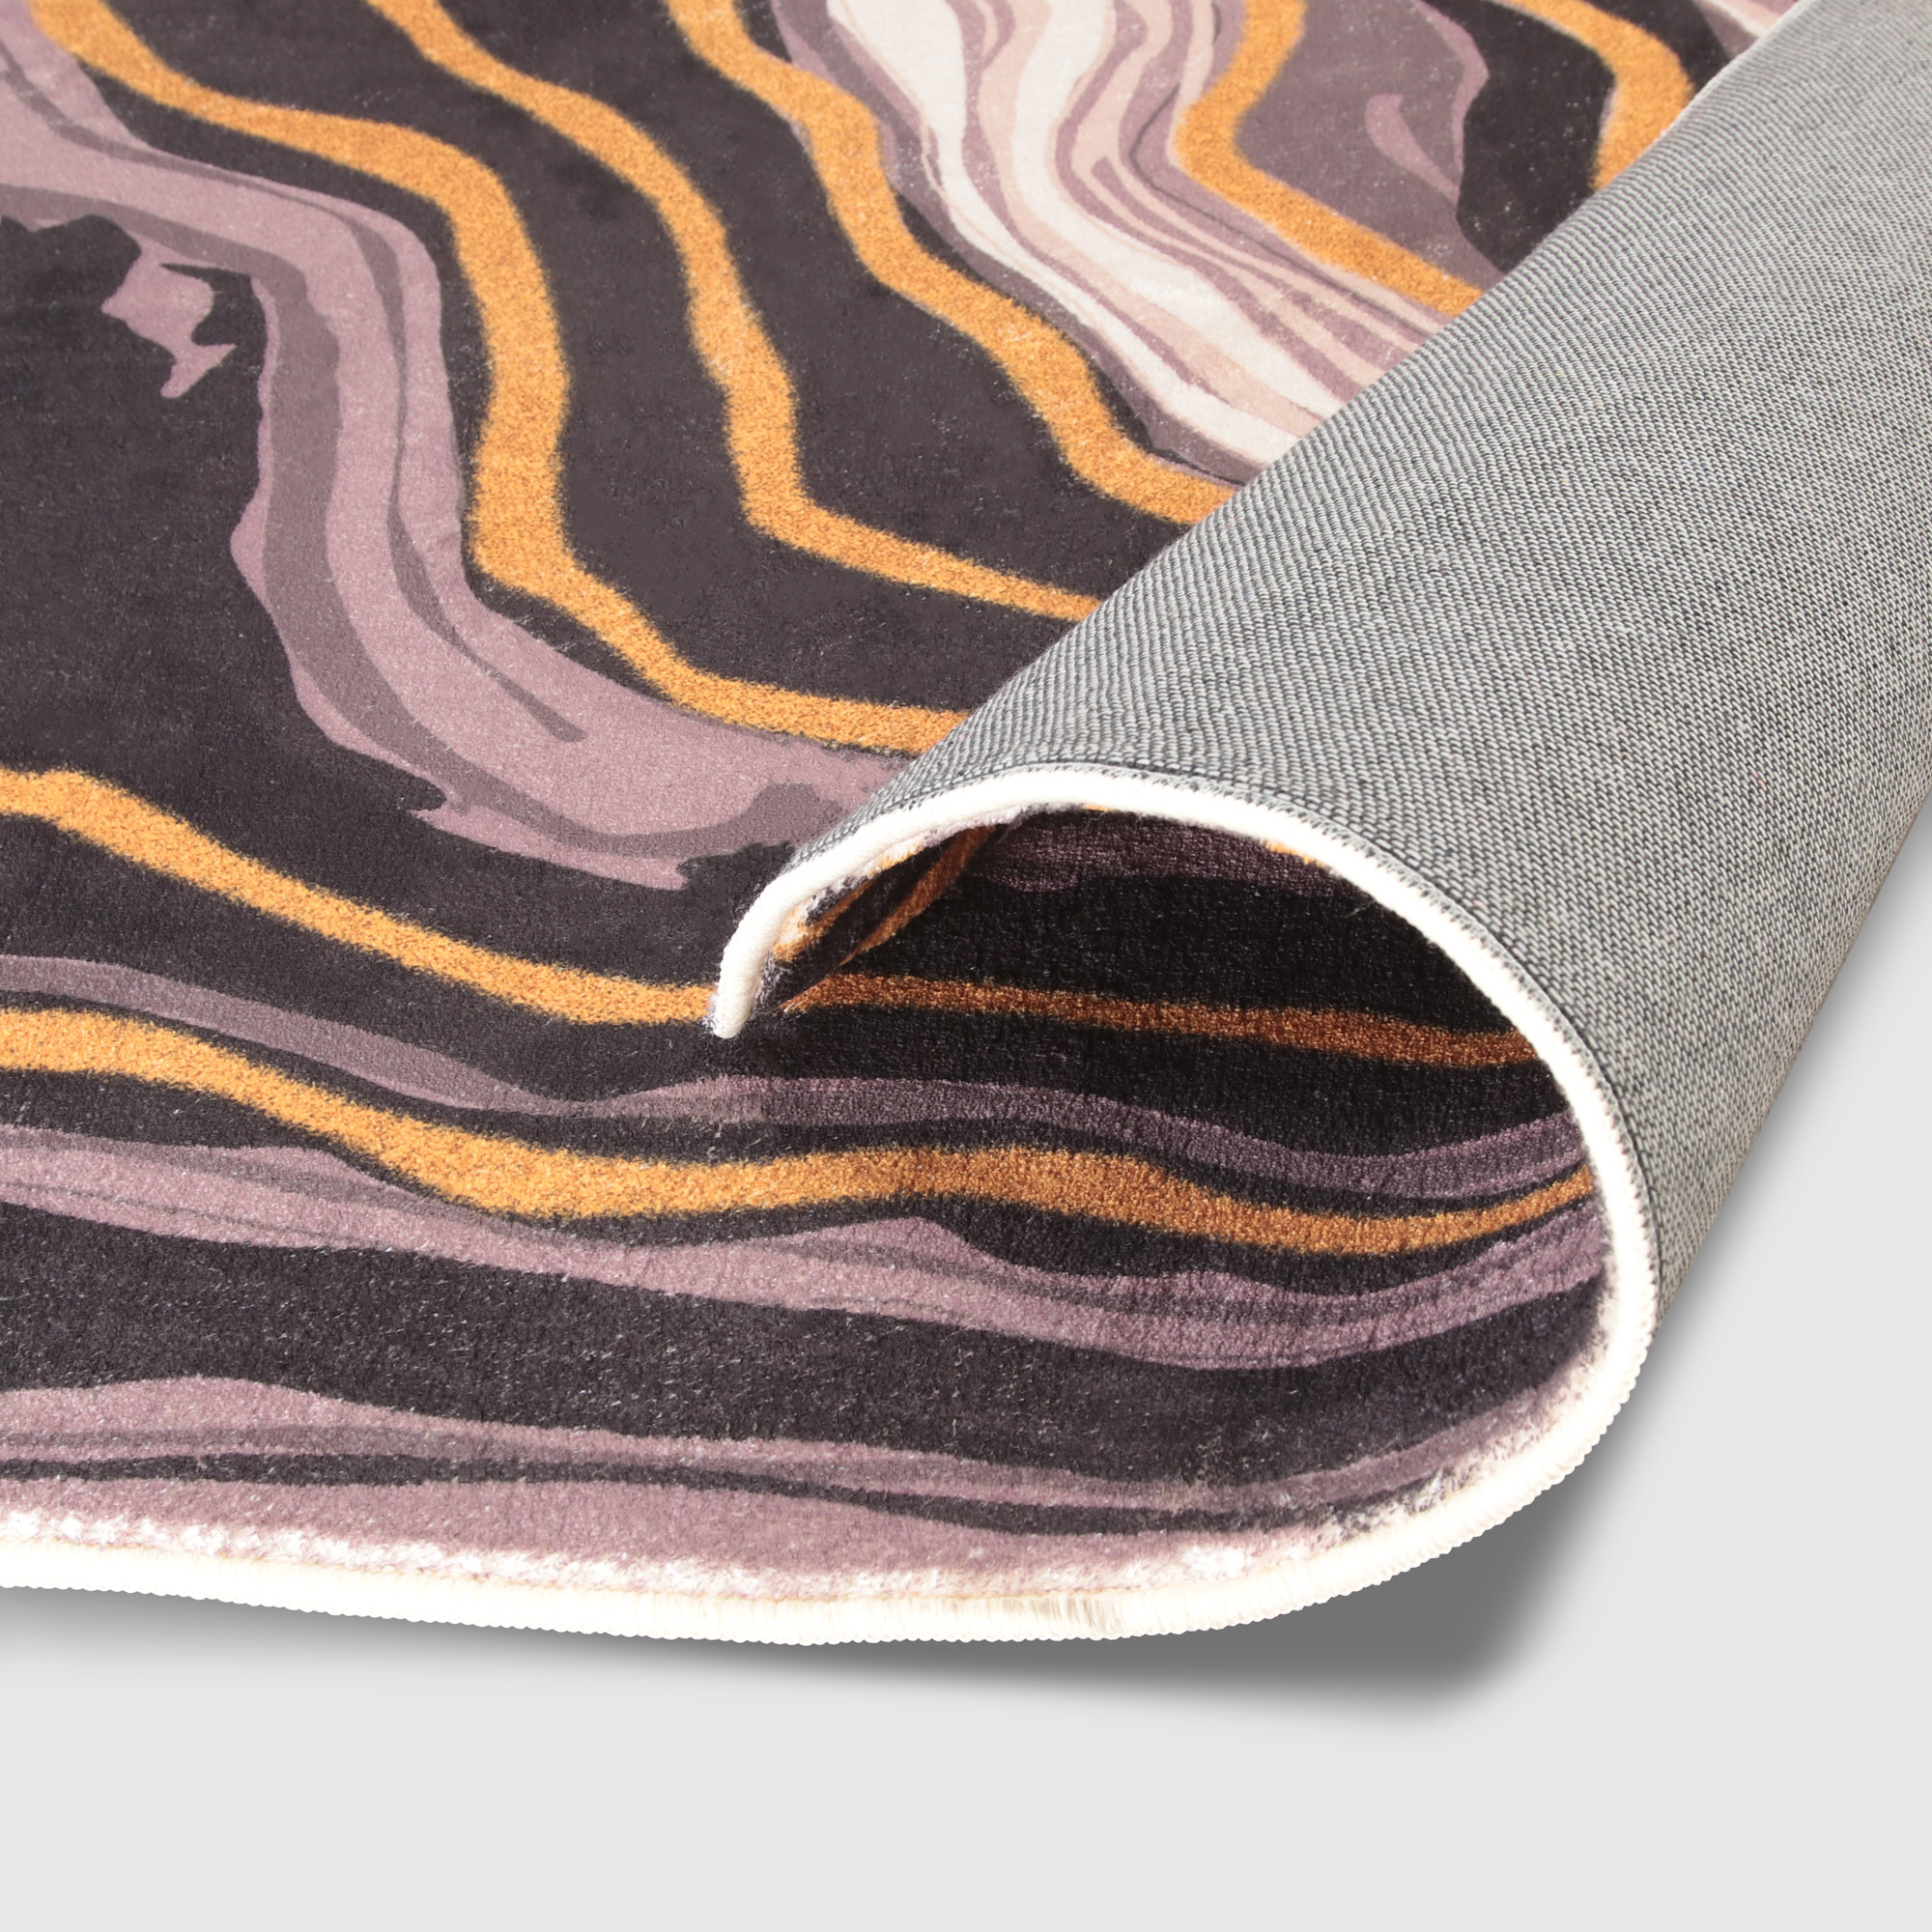 Коврик Silverstone Carpet с принтом мультицвет 80х150 см - фото 4